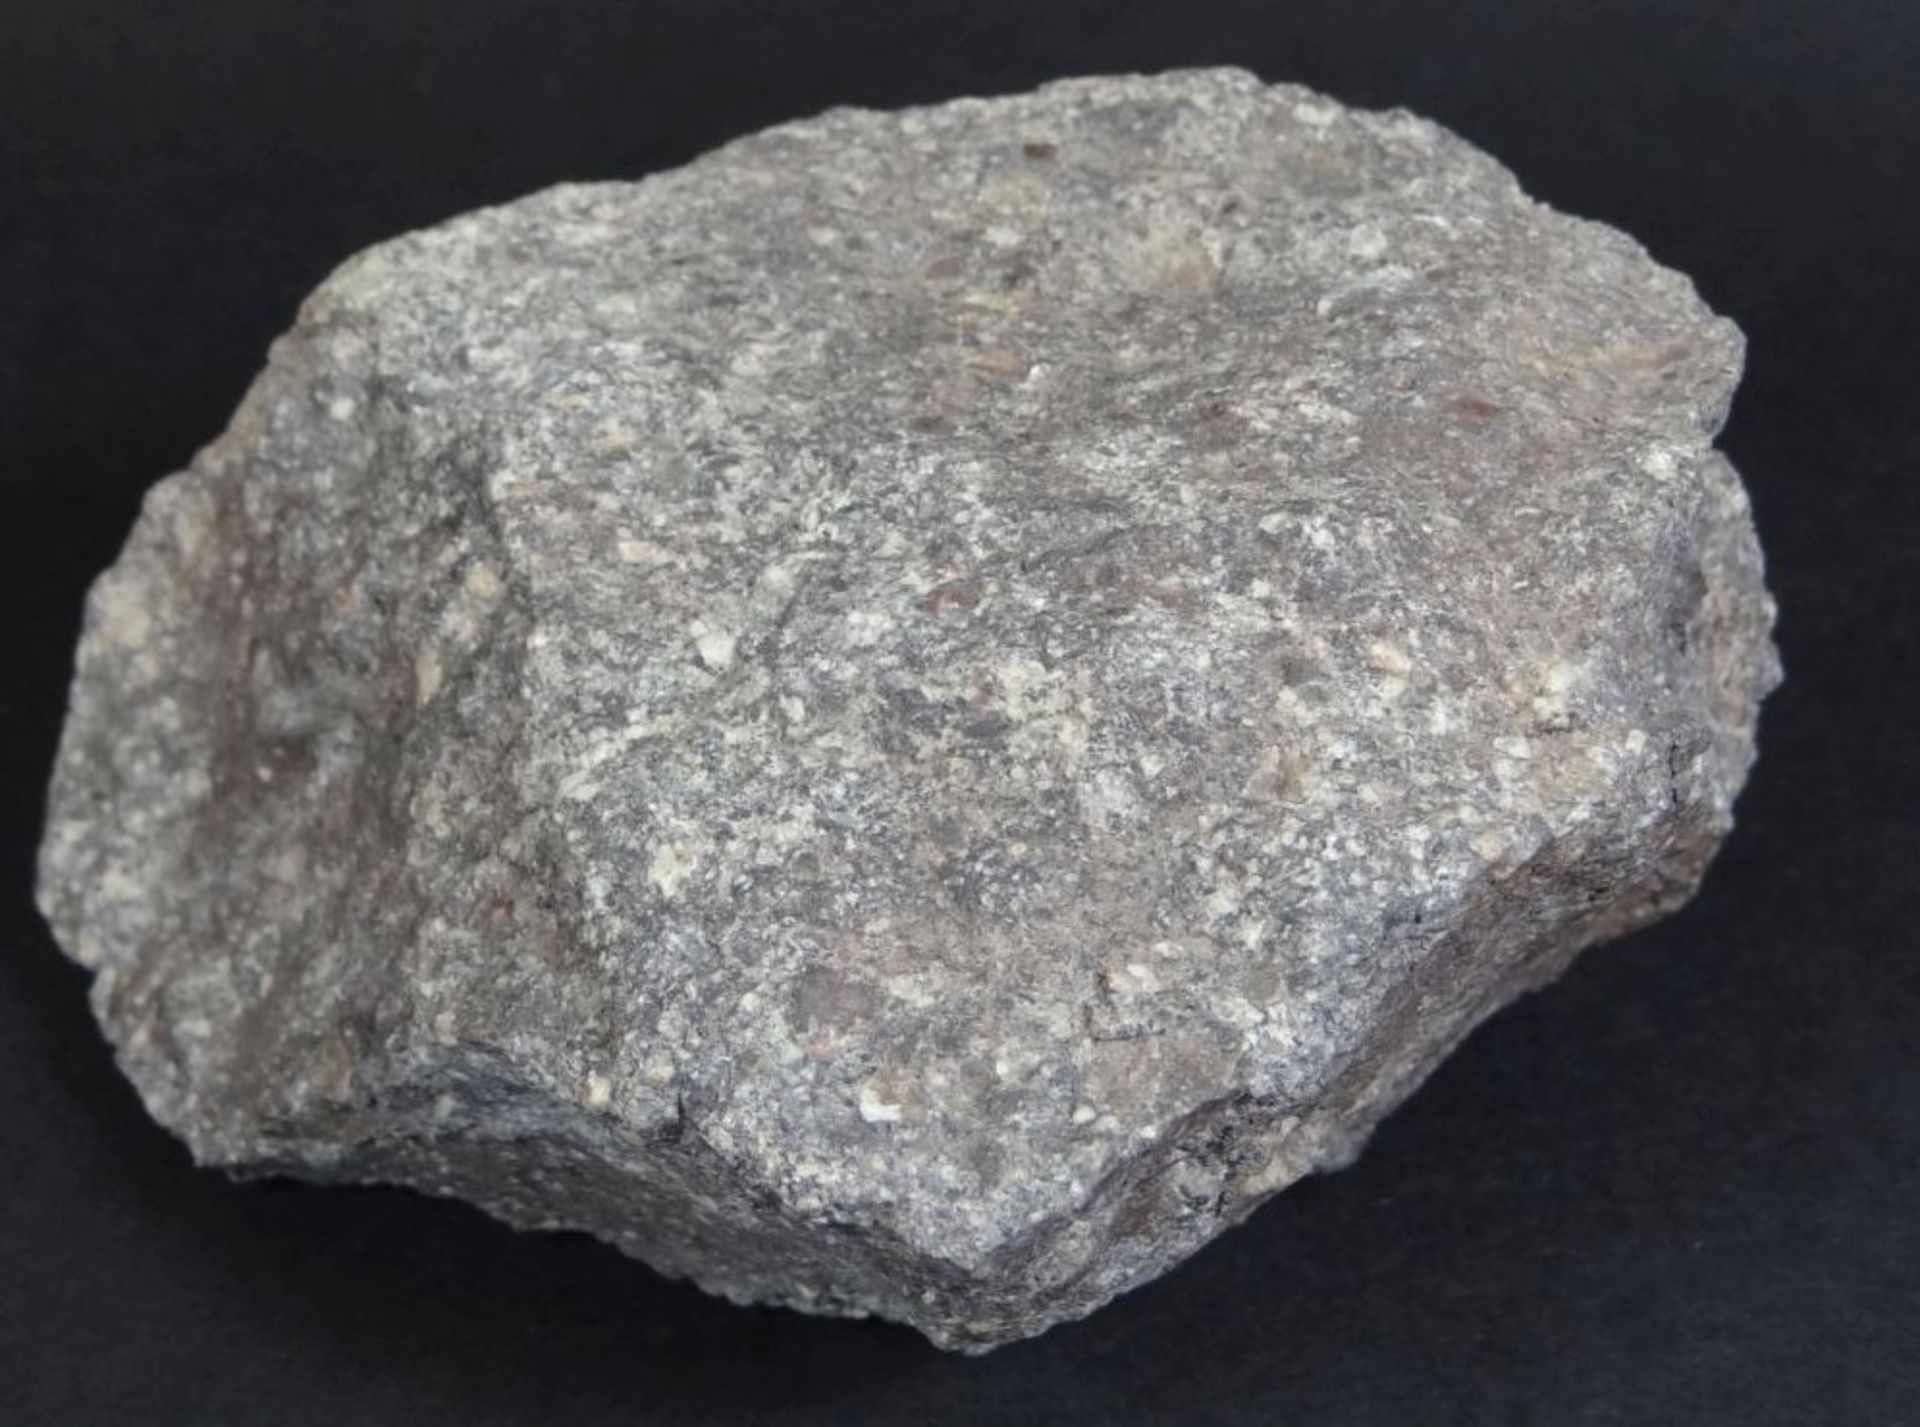 grosses Stück Mineral/Stein?, "Quarzphosphor" Fundort Bozen, 11x8x6 c - Bild 3 aus 4